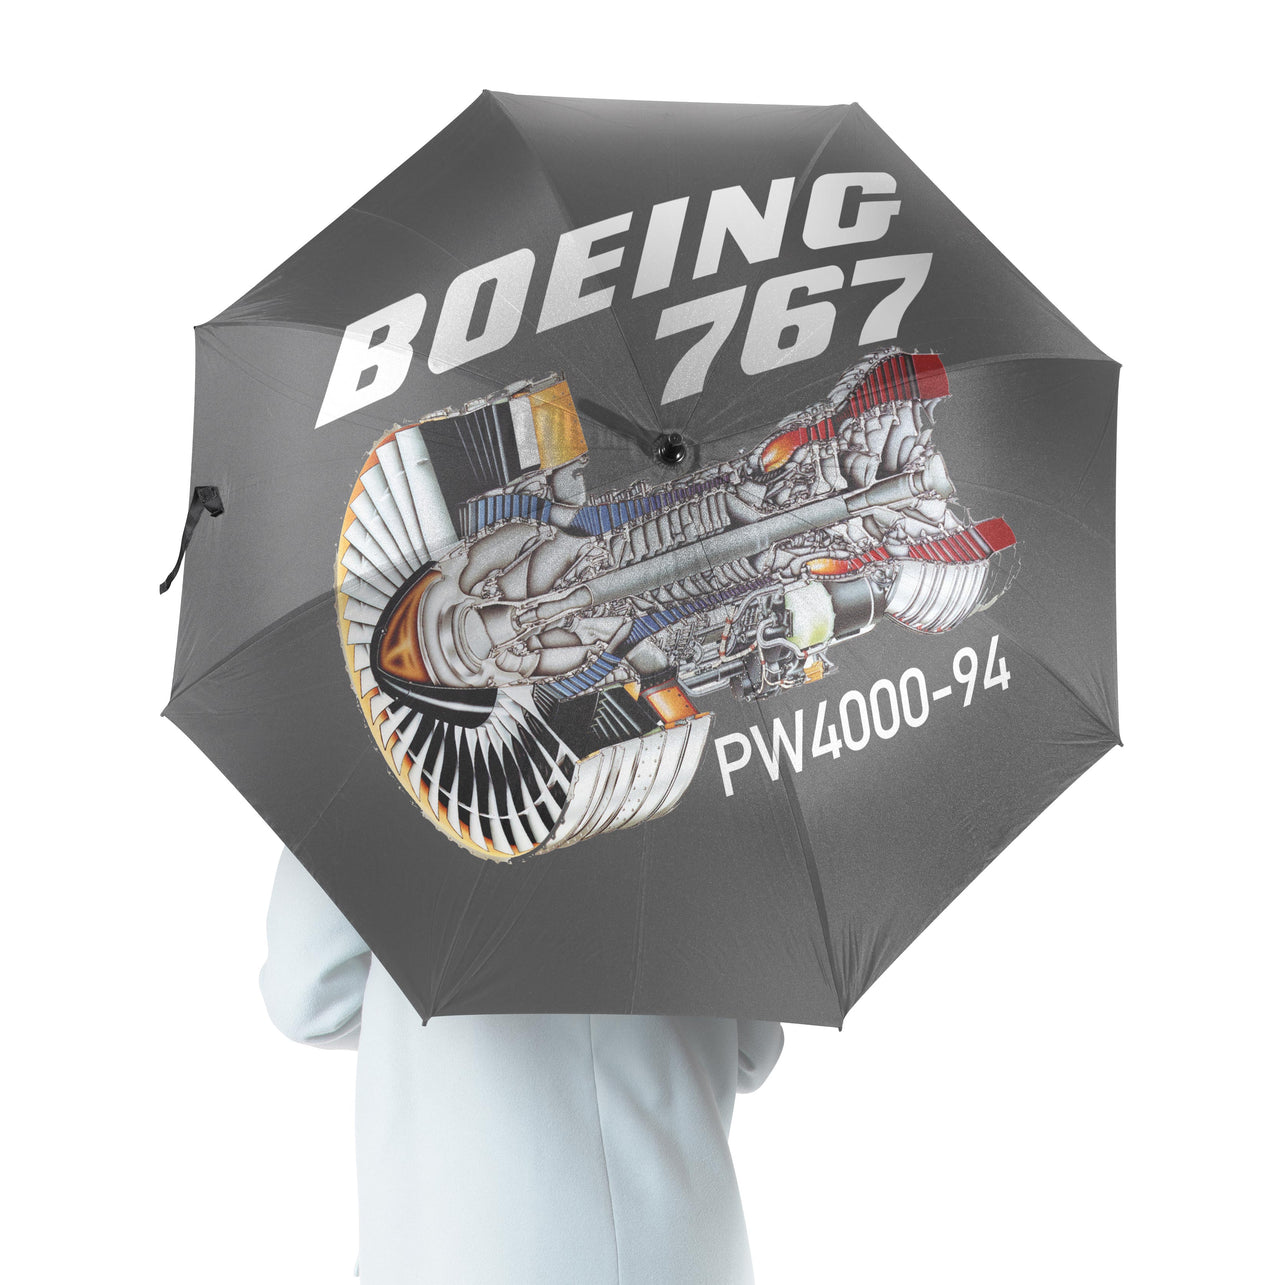 Boeing 767 Engine (PW4000-94) Designed Umbrella